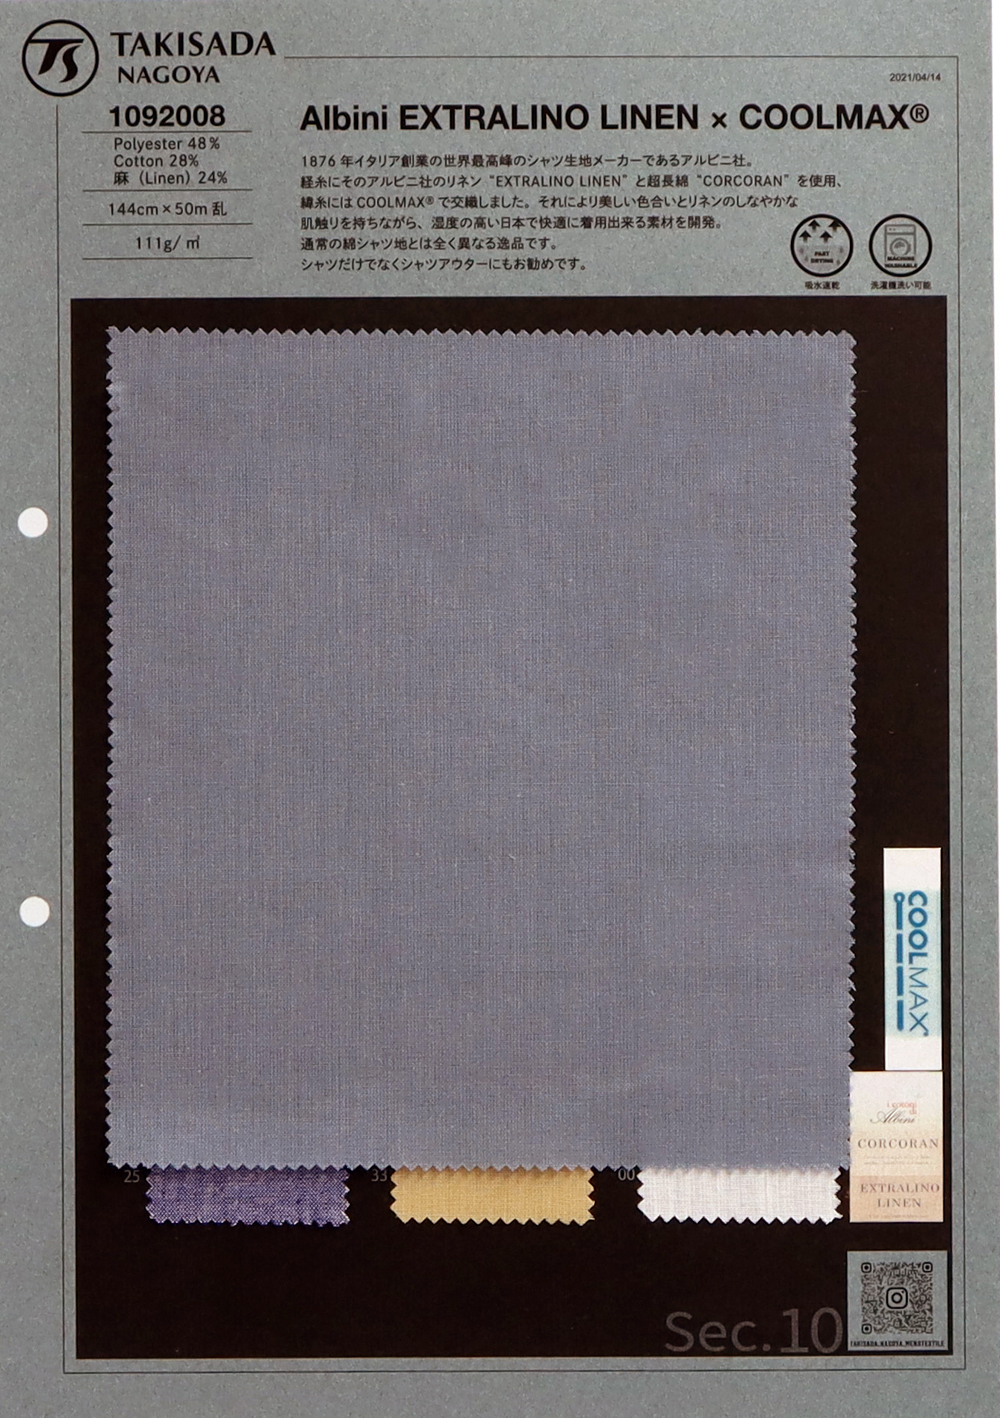 1092008 Aibini EXTRALINO LEINEN X COOLMAX®[Textilgewebe] Takisada Nagoya